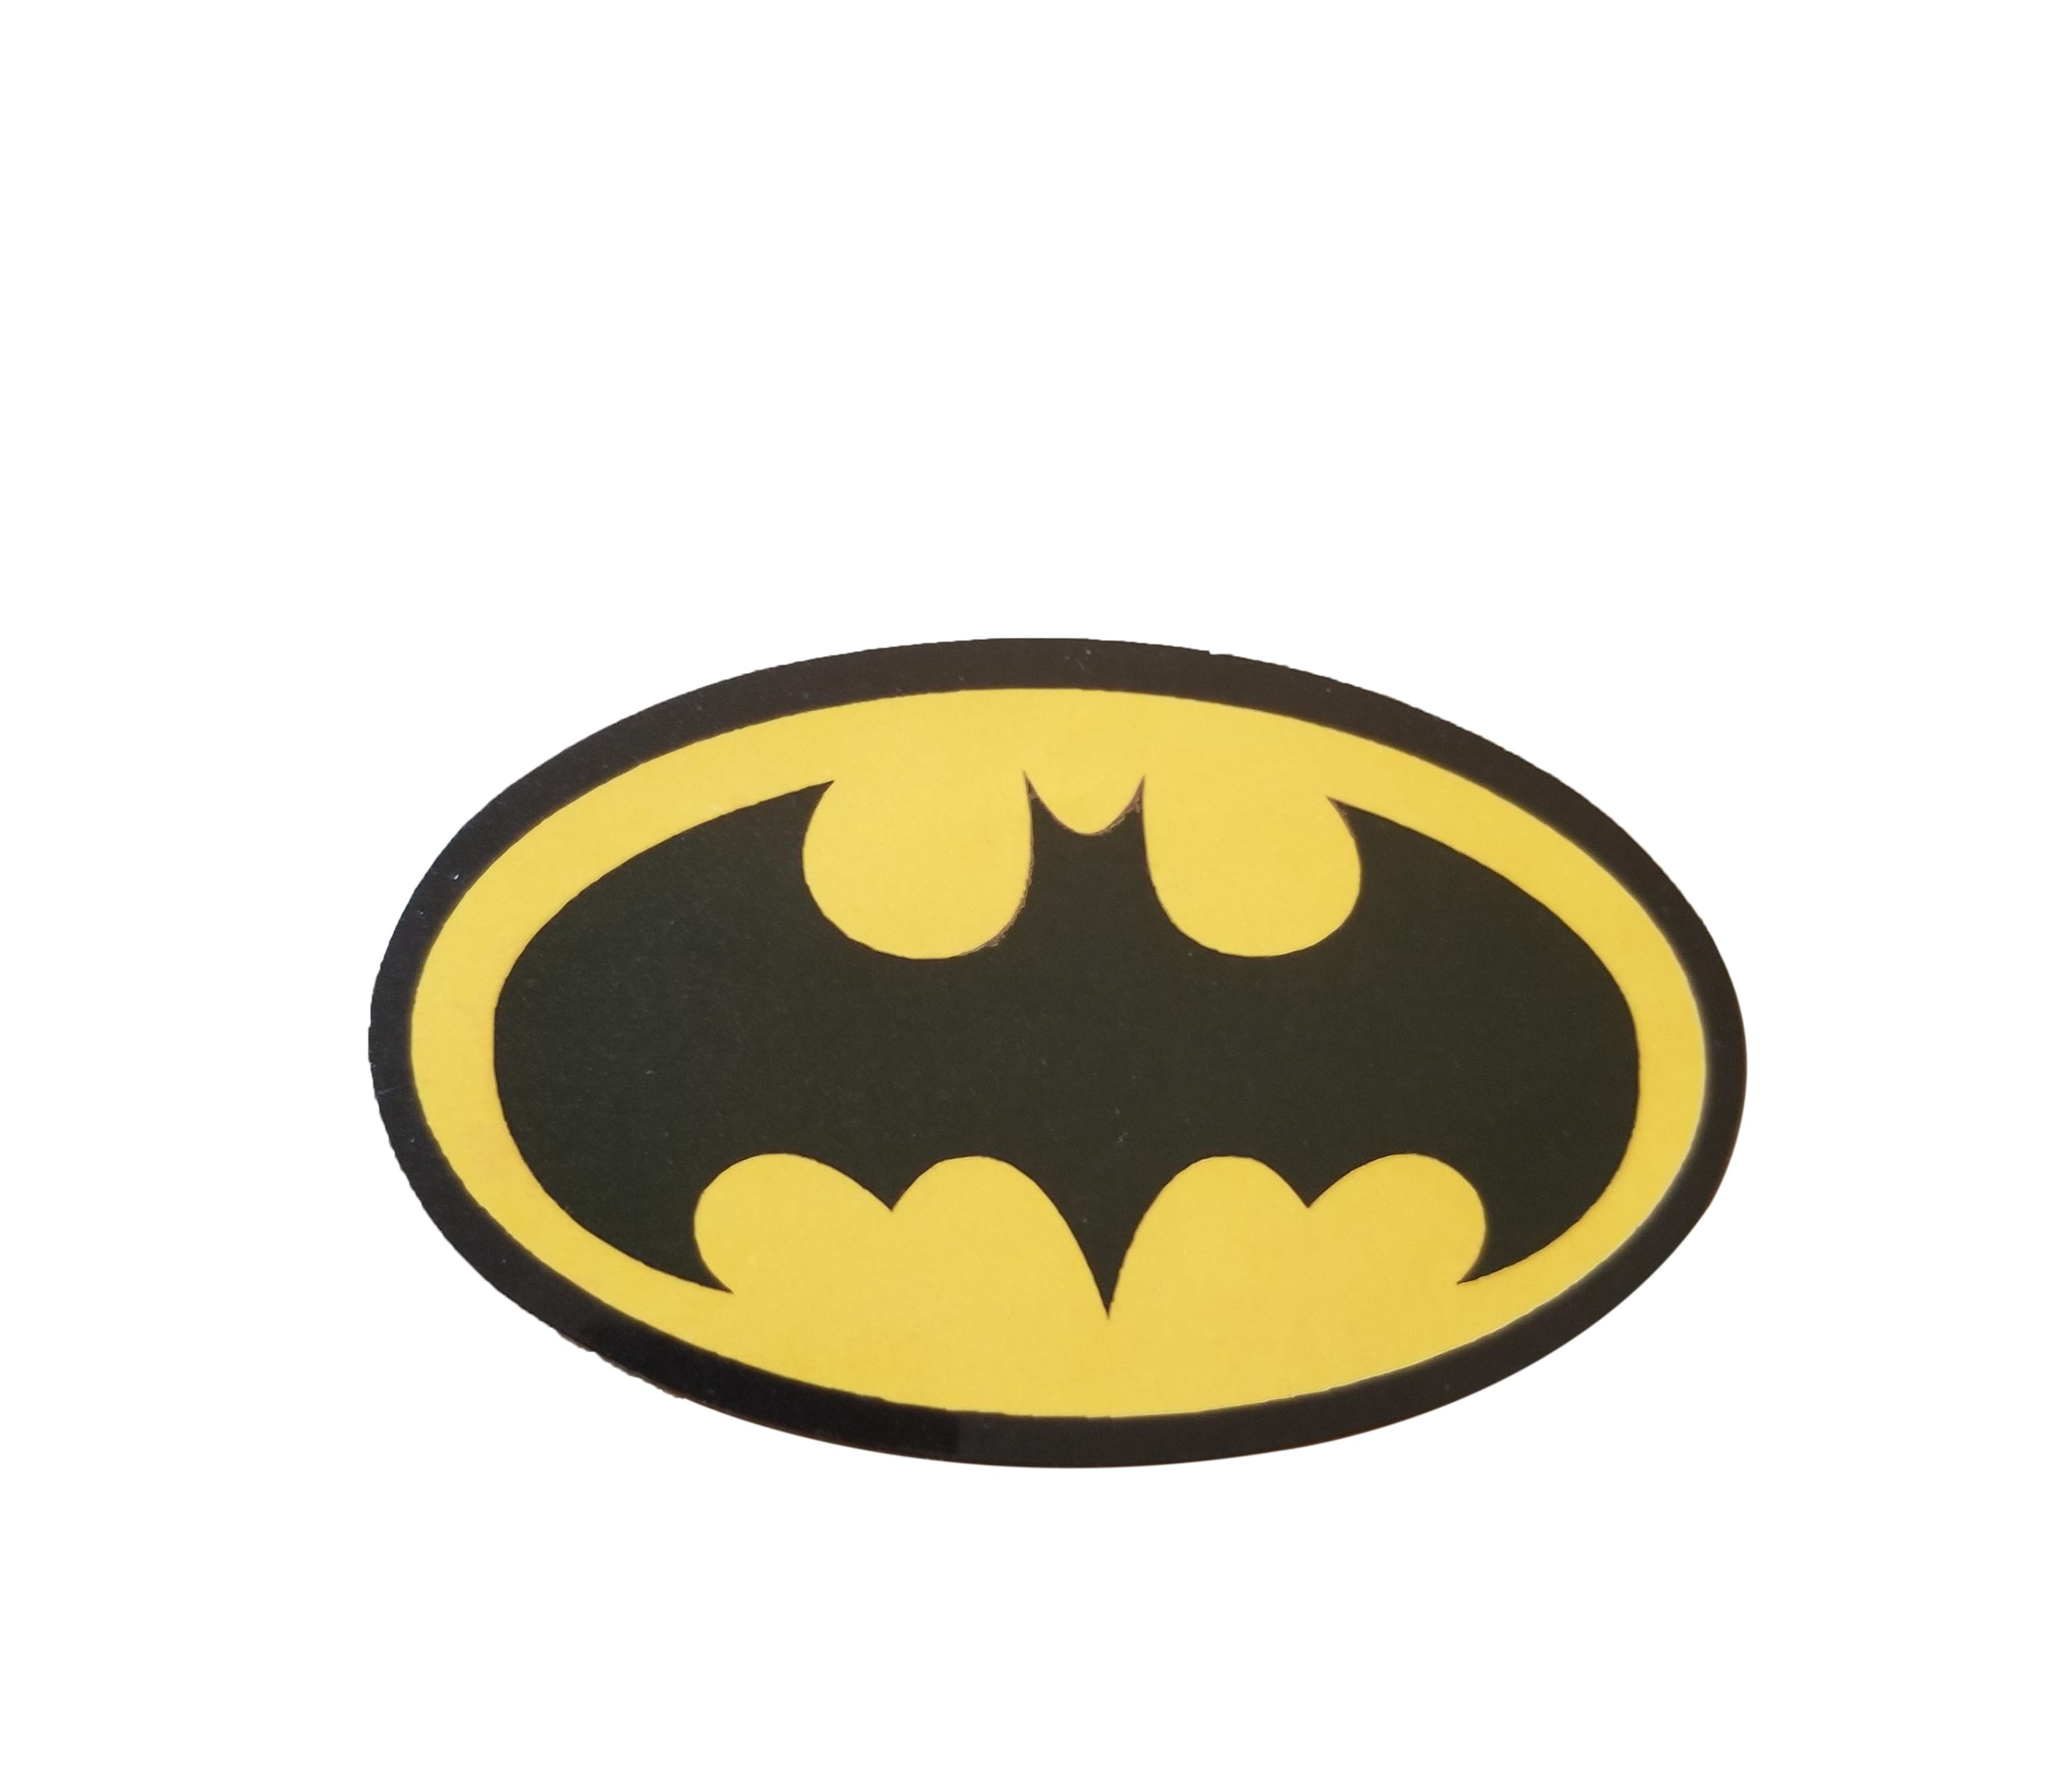 Original Batman Logo - Original Black and Yellow Batman Logo Sticker, Bat Emblem